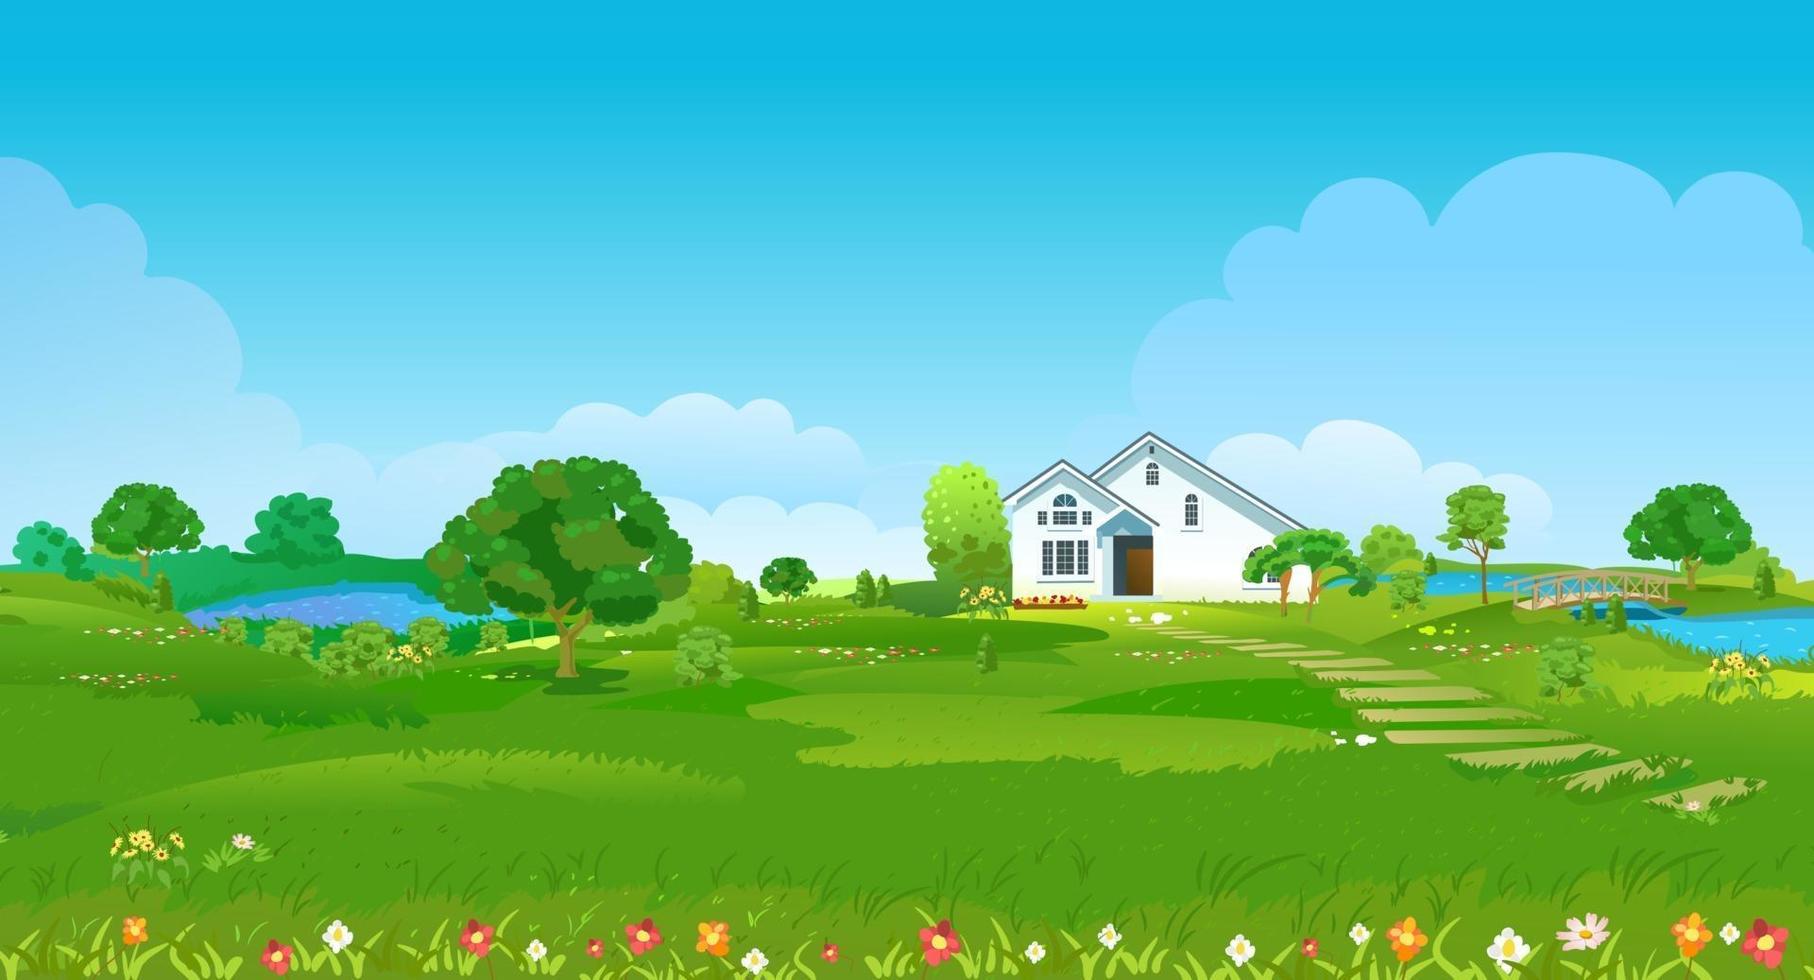 Sommerlichtung mit einem weißen Haus, Teichen, grünen Bäumen und Blumen. Sommerland Landschaft. Vektorillustration vektor